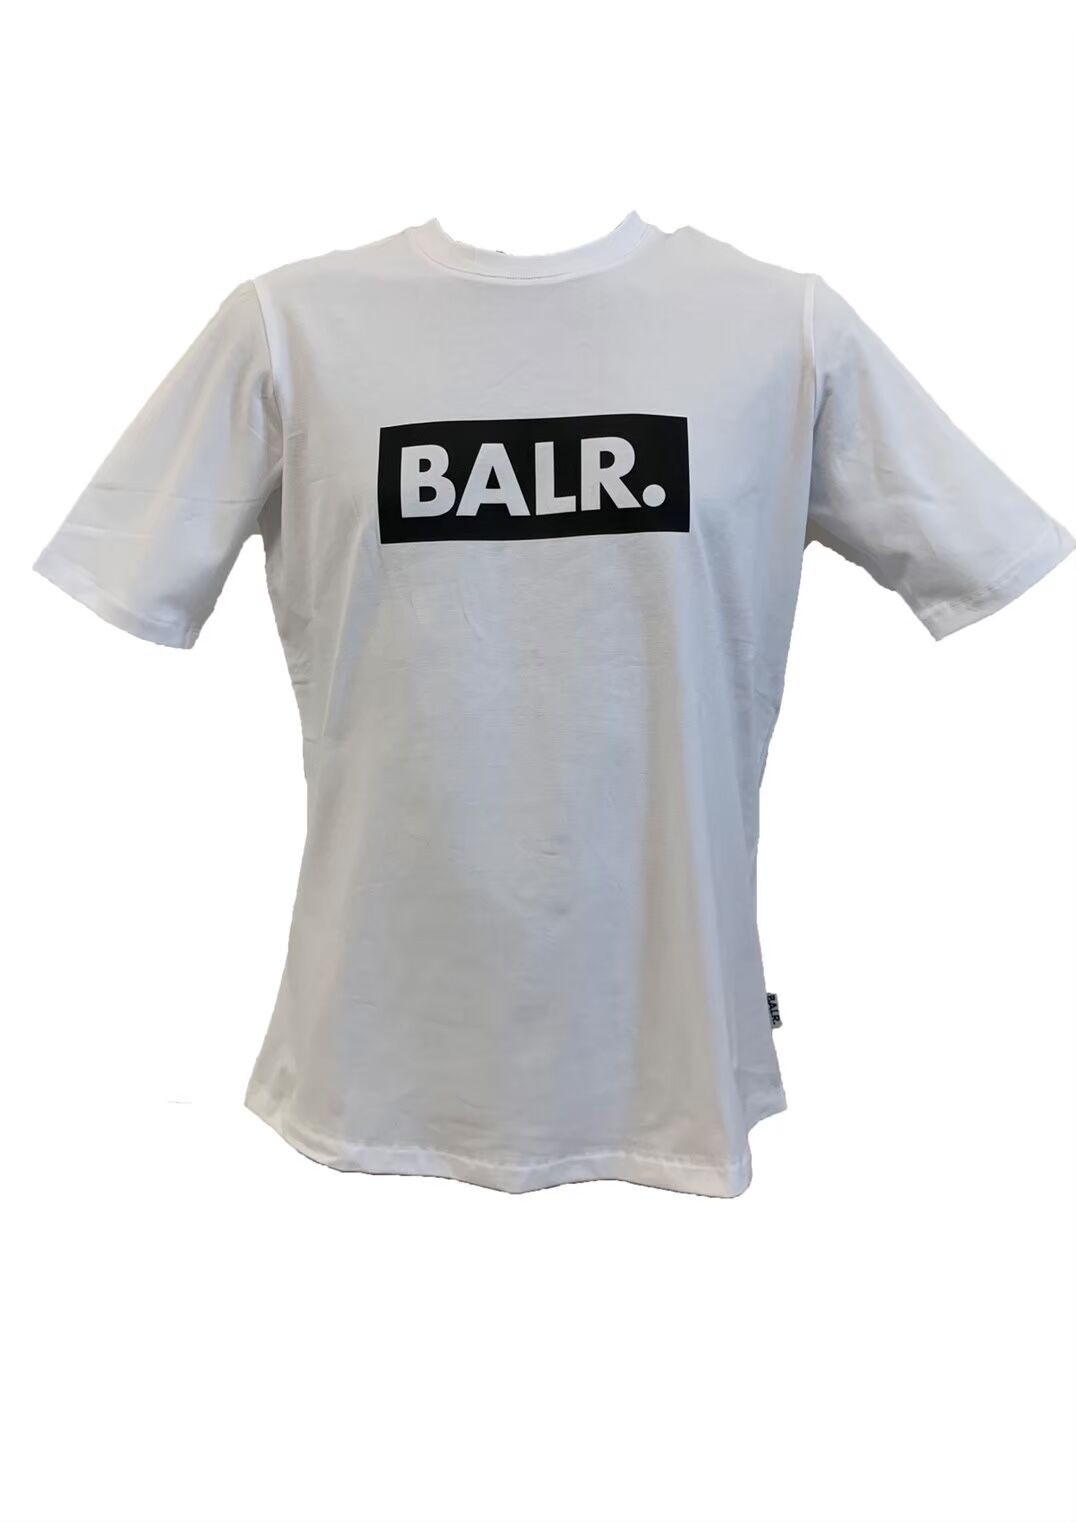 BALR. Tシャツ | T'eneT